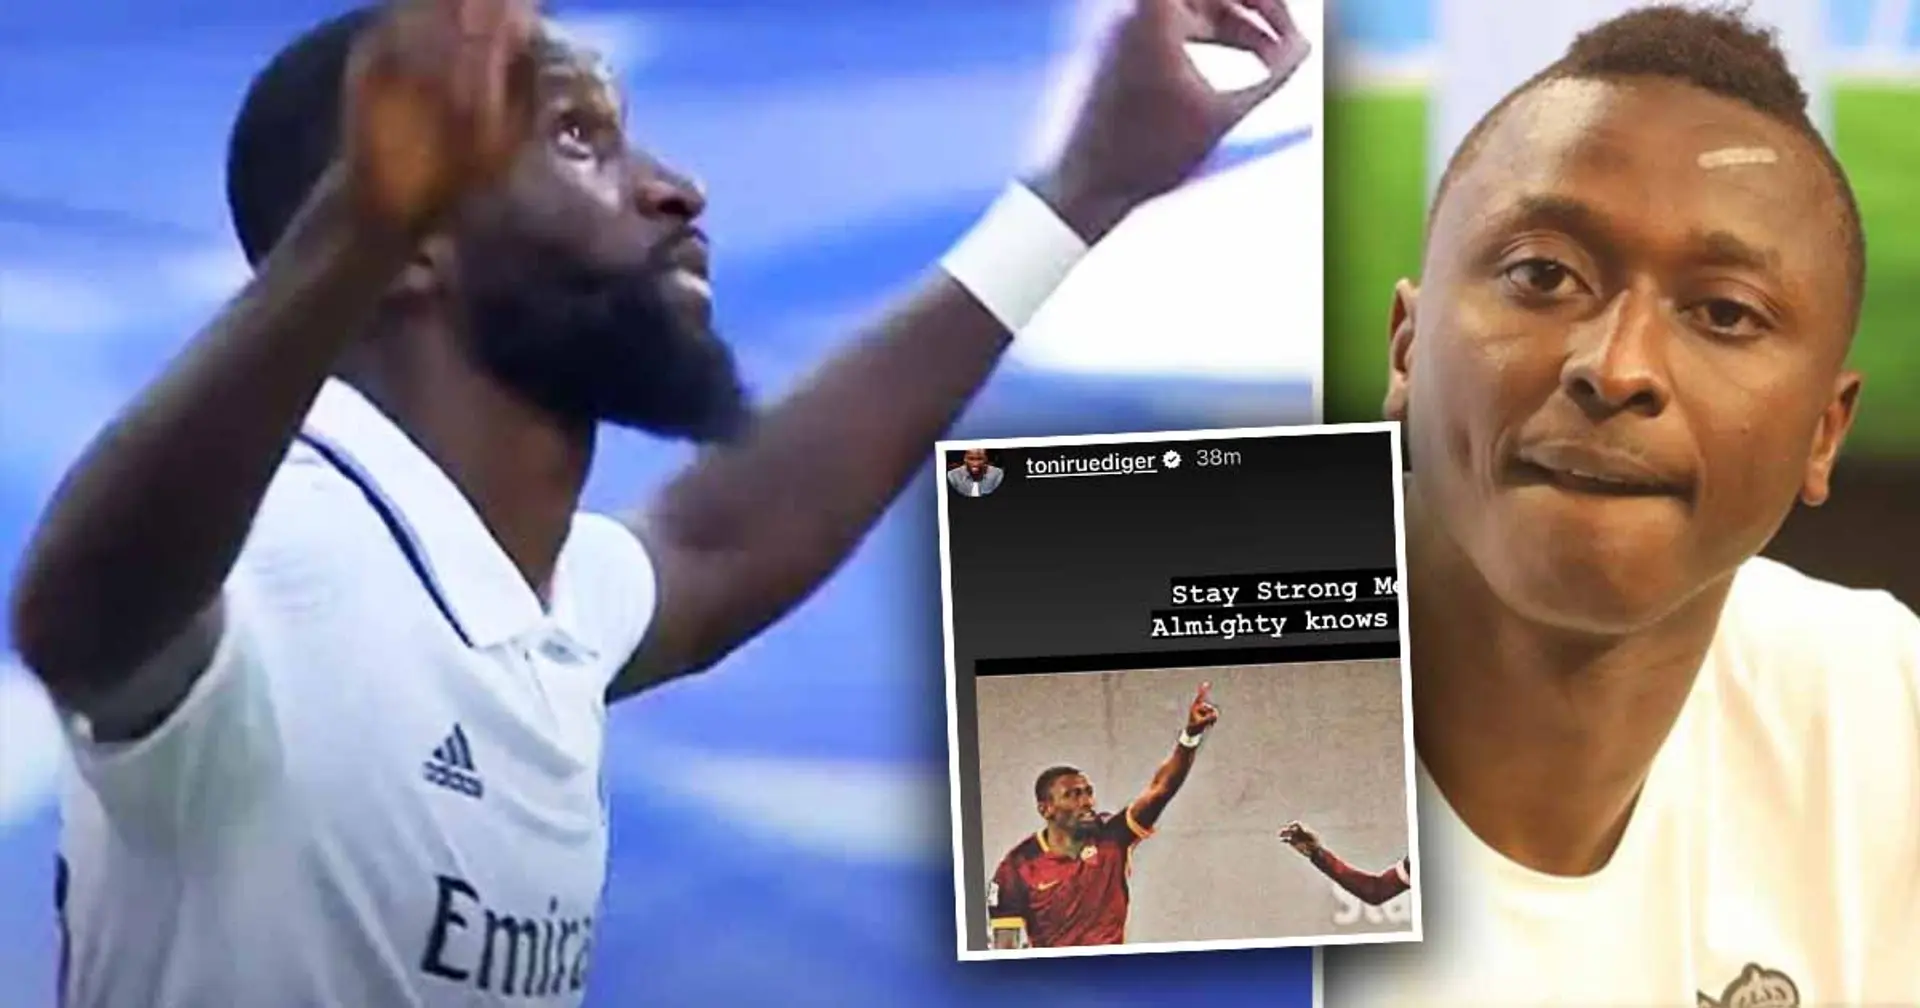 Erklärt: Warum Rüdigers frische Instagram-Nachricht für einen Spieler von Real Sociedad so außergewöhnlich ist